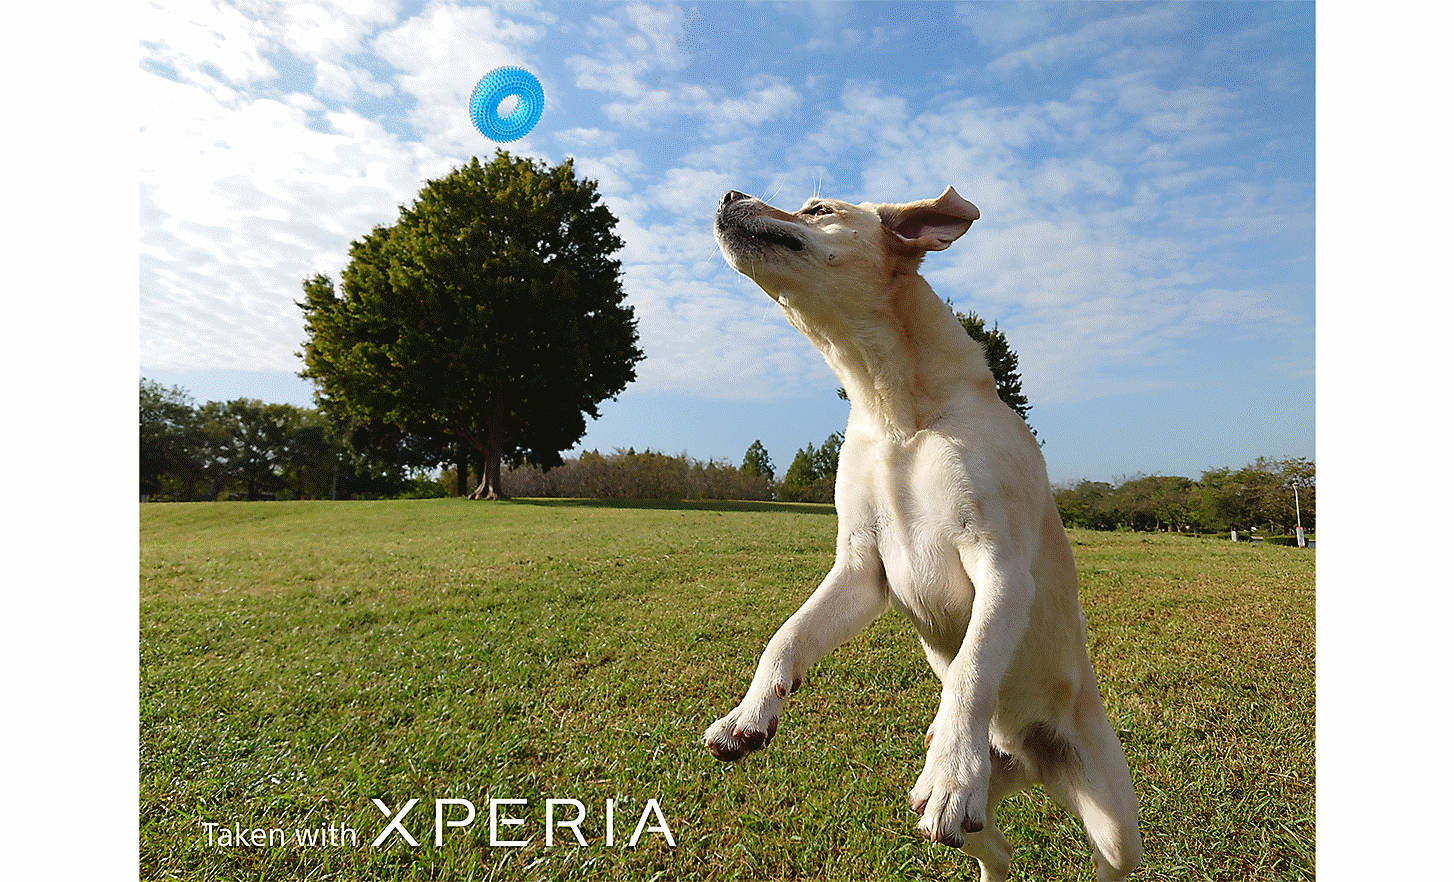 Cliché d’action représentant un chien qui saute pour attraper un jouet bleu dans un champ. Le texte indique : « Photo prise avec un XPERIA ».